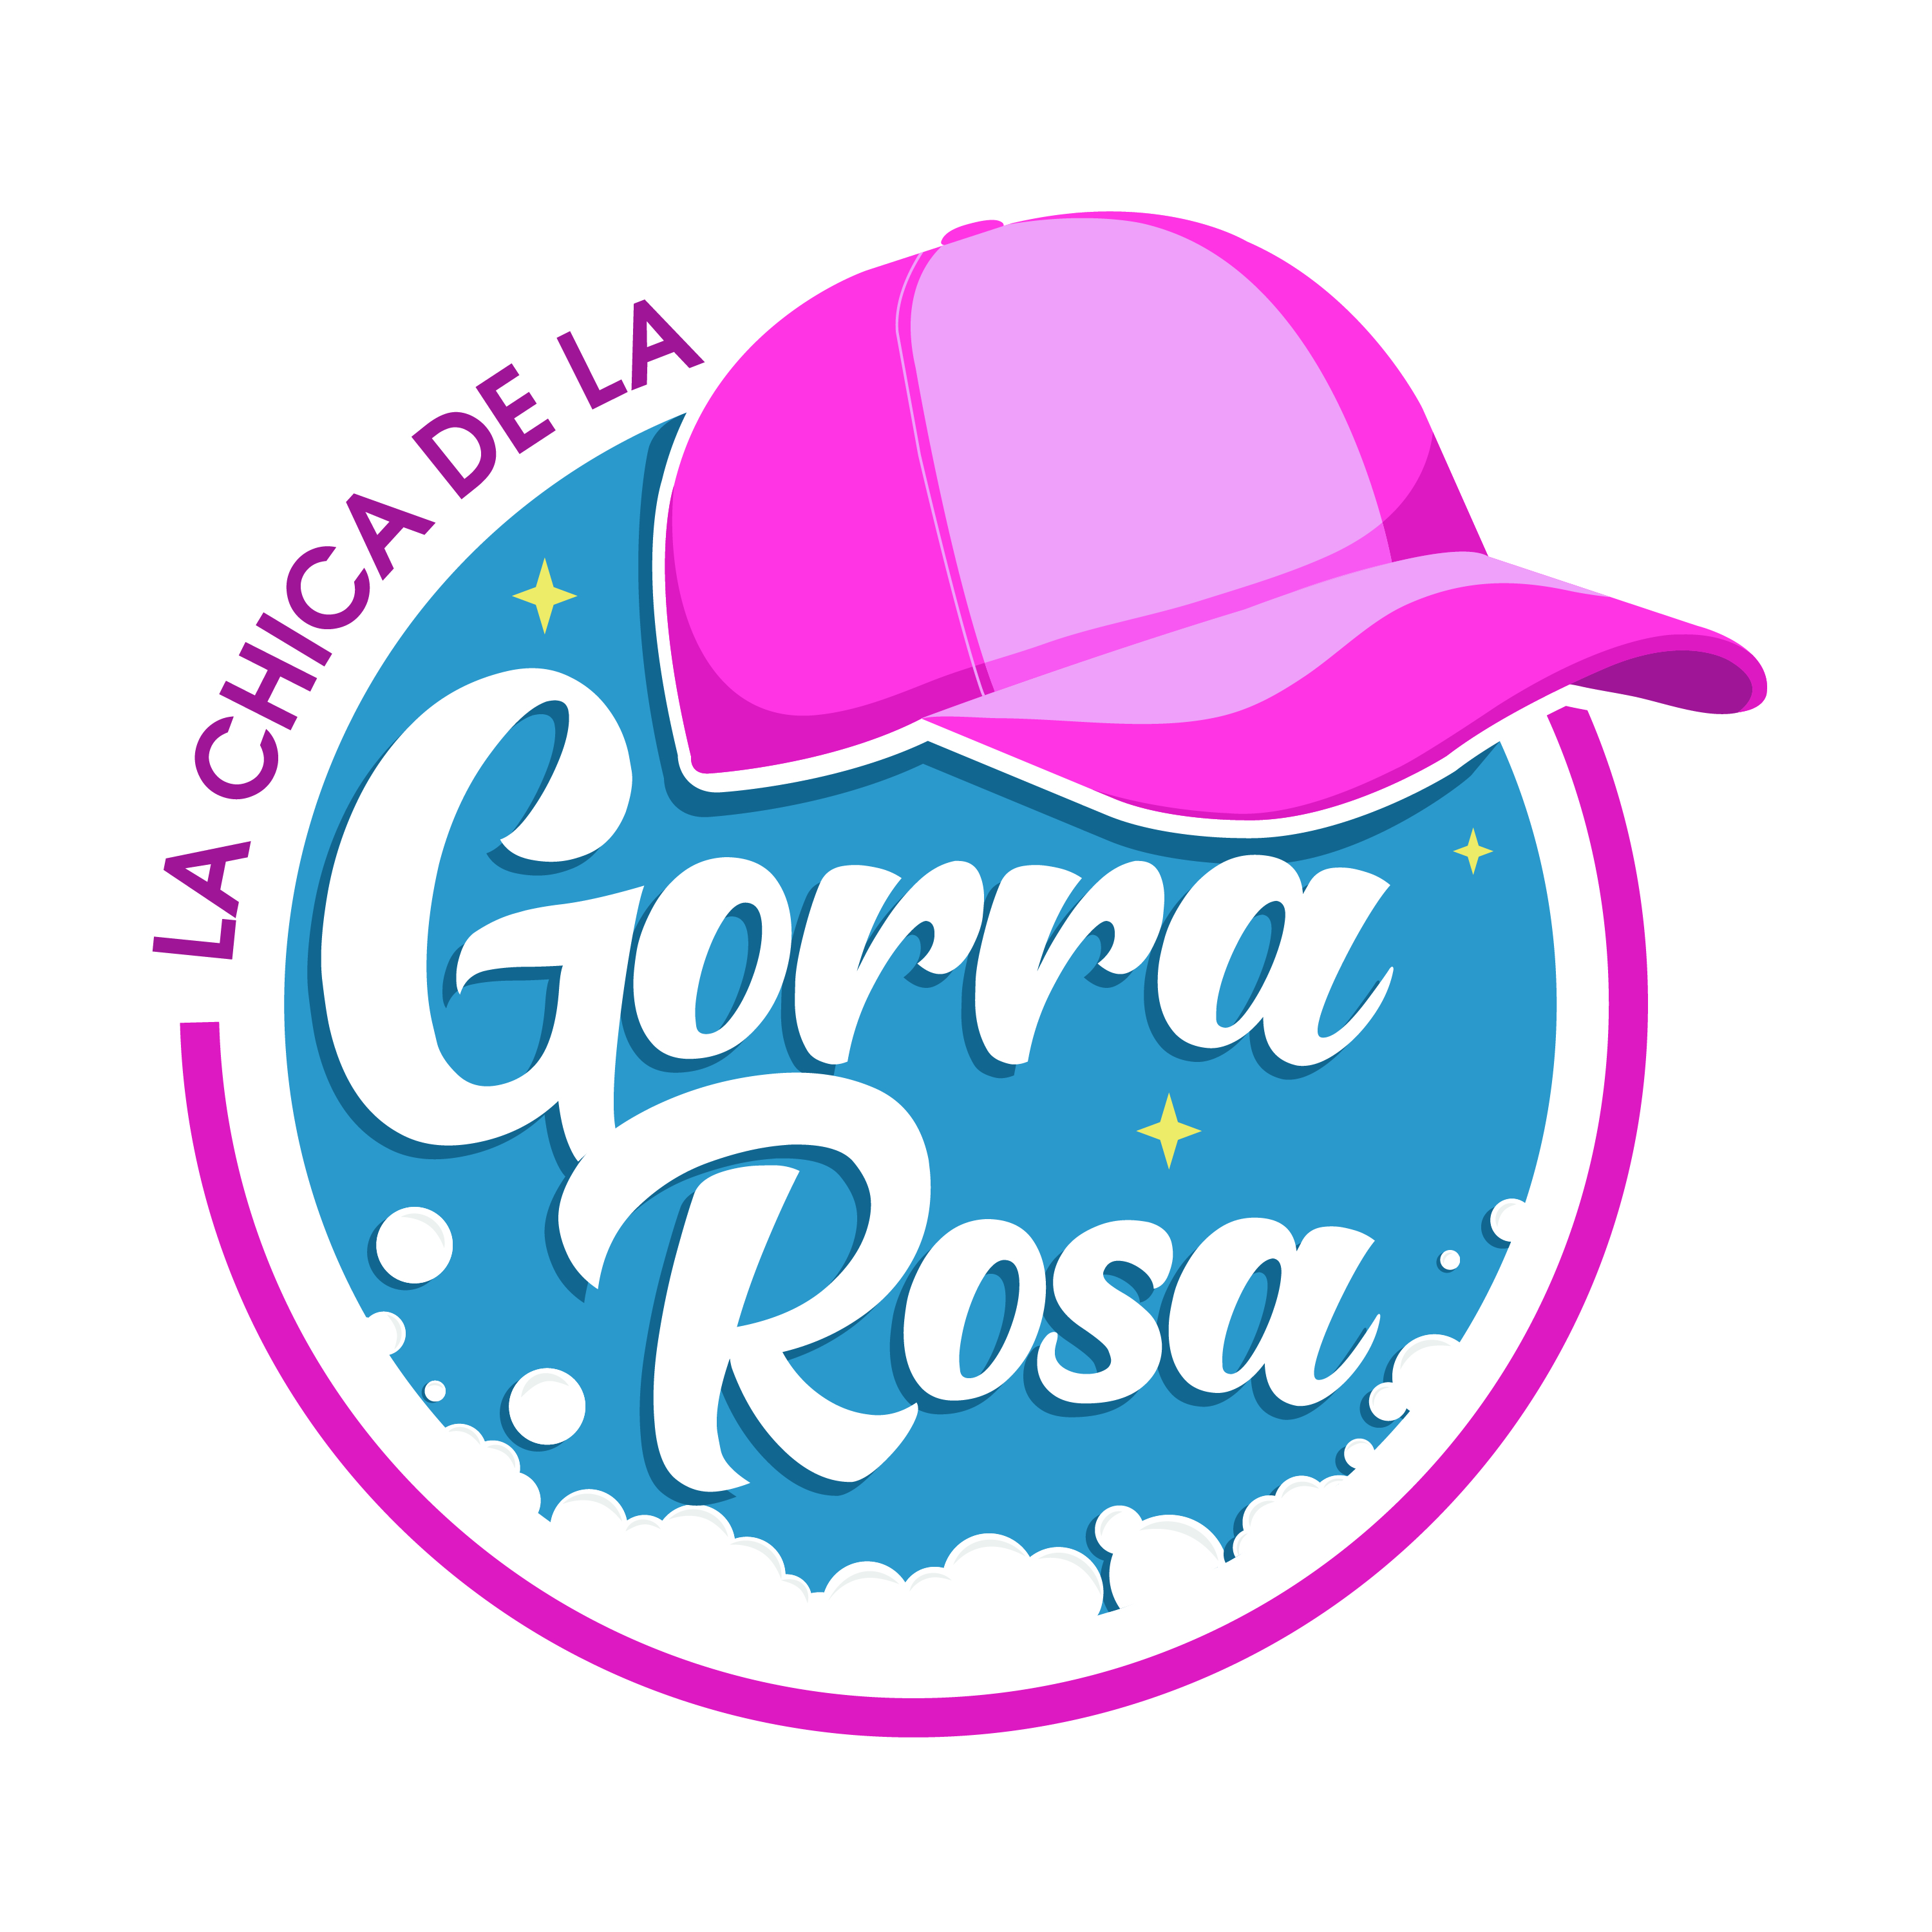 La Chica de La Gorra Rosa Logo